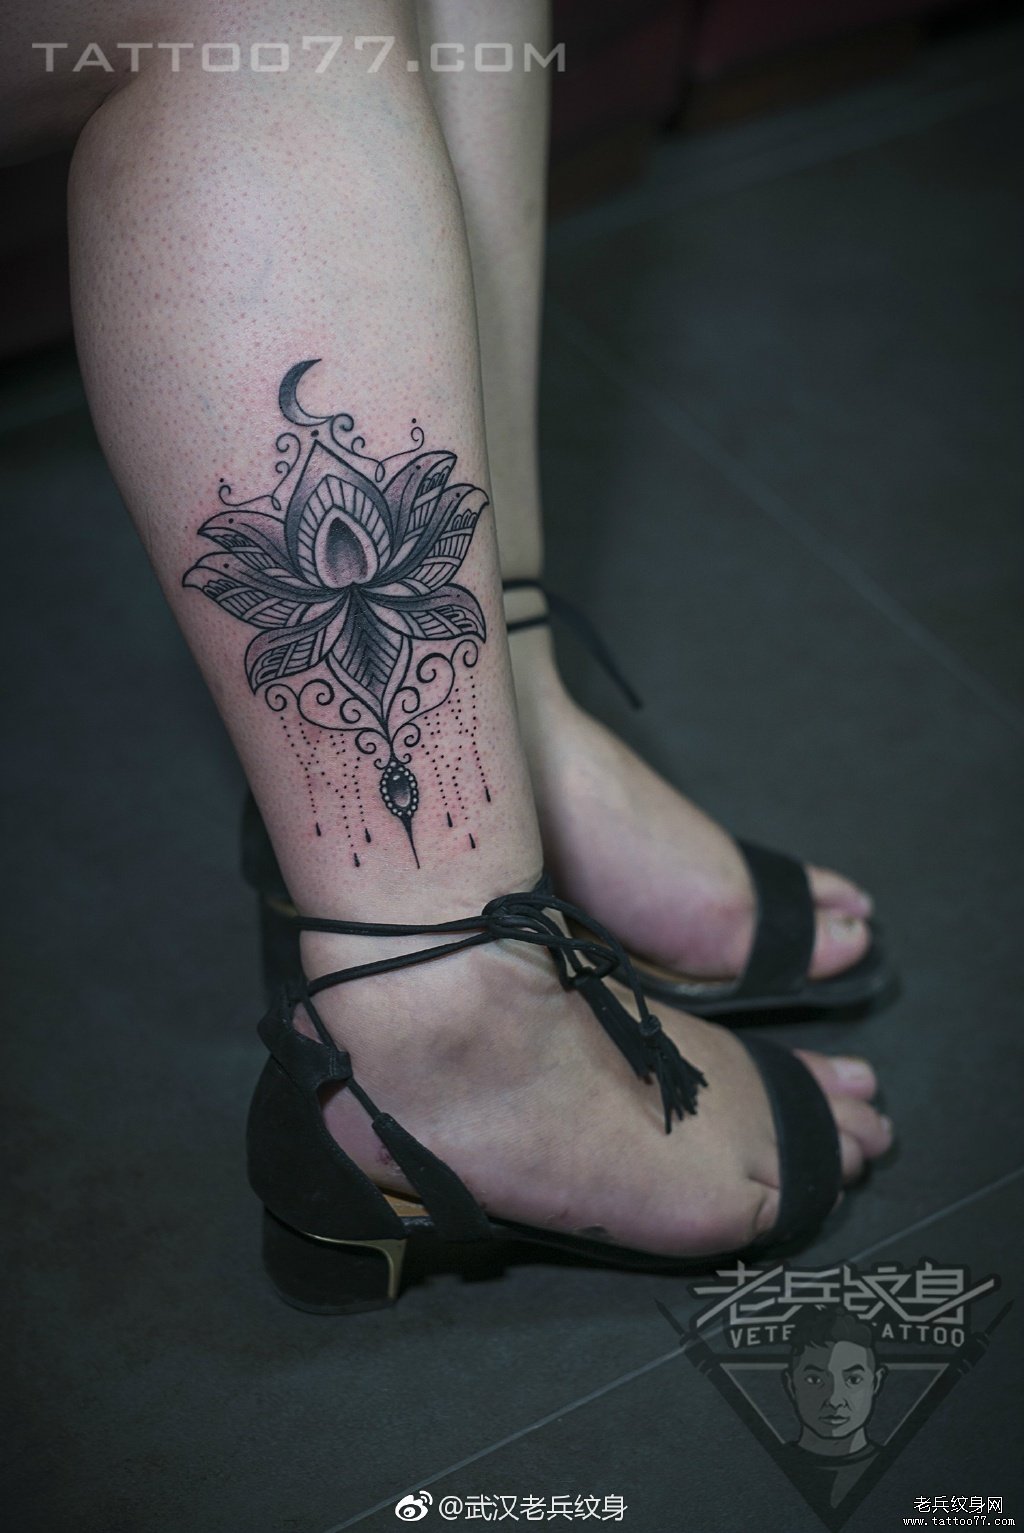 武汉纹身师打造的小腿莲花梵花纹身图案作品